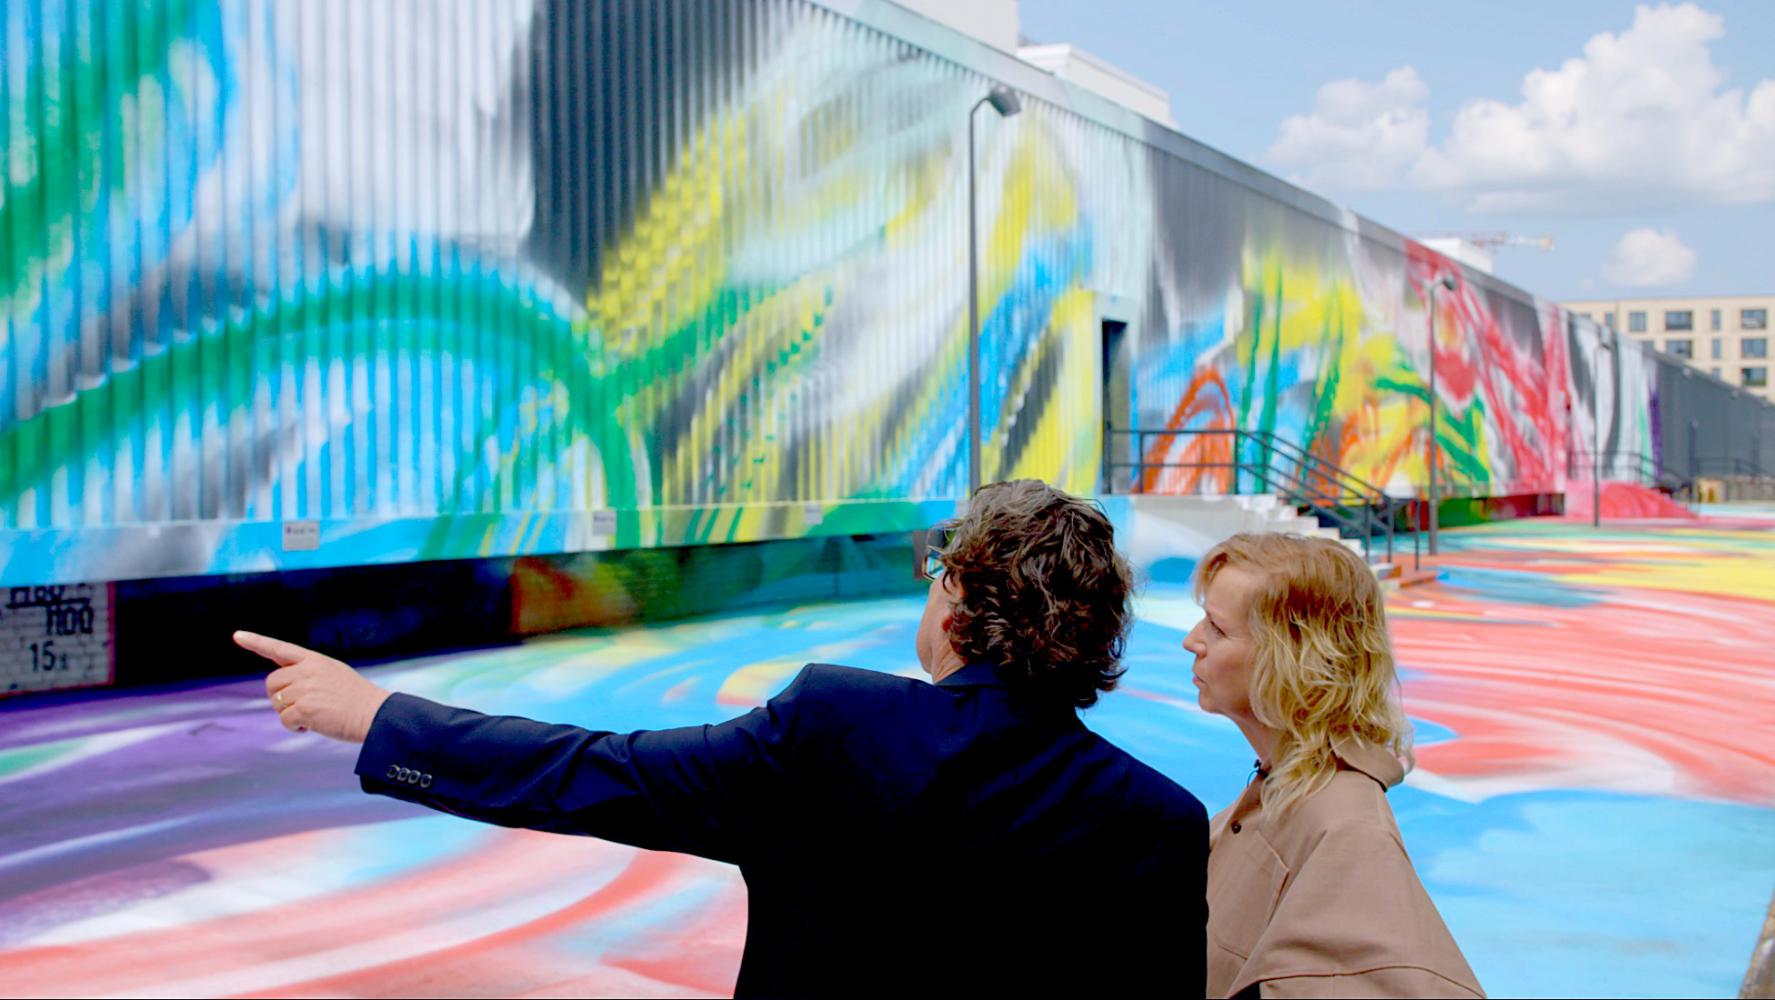 Katharina Grosse mit Nationalgalerie-Direktor Udo Kittelmann vor den Rieck-Hallen des Hamburger Bahnhofs in Berlin. Die Künstlerin hat die Hallen und den Außenraum bemalt